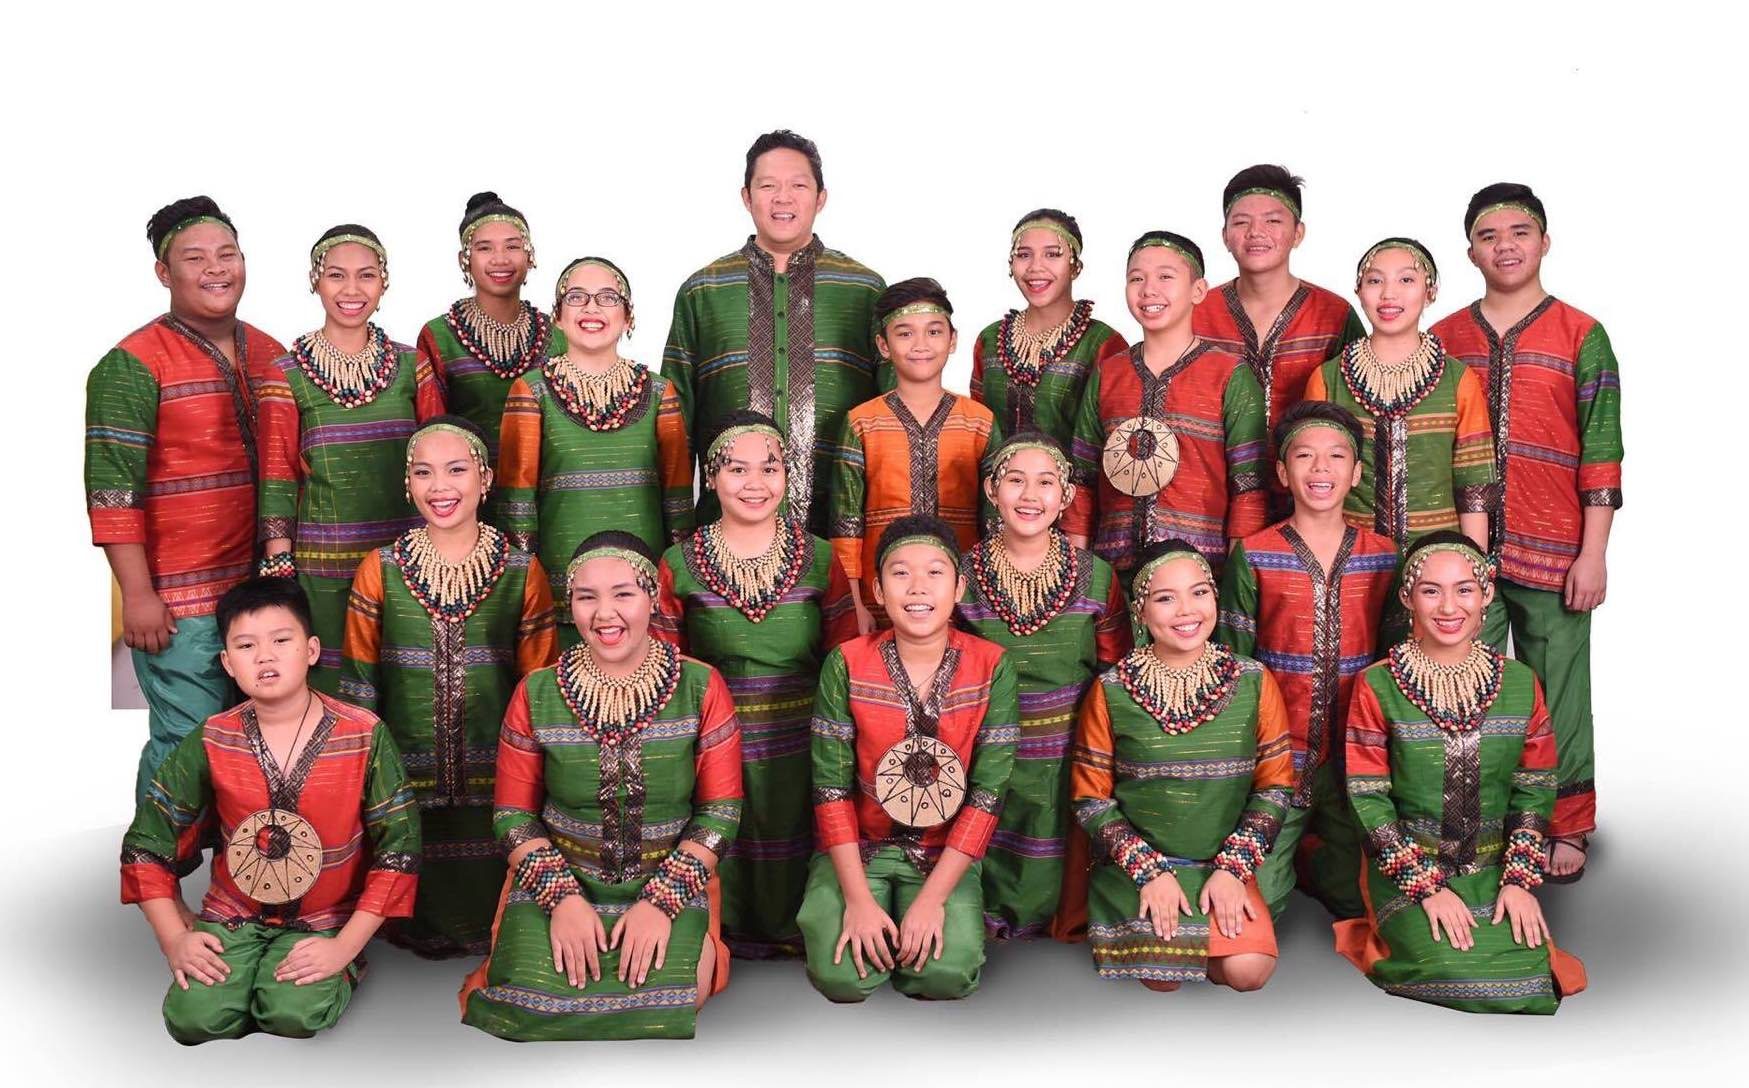 Award-winning Mandaue Children’s Choir to sing in San Francisco